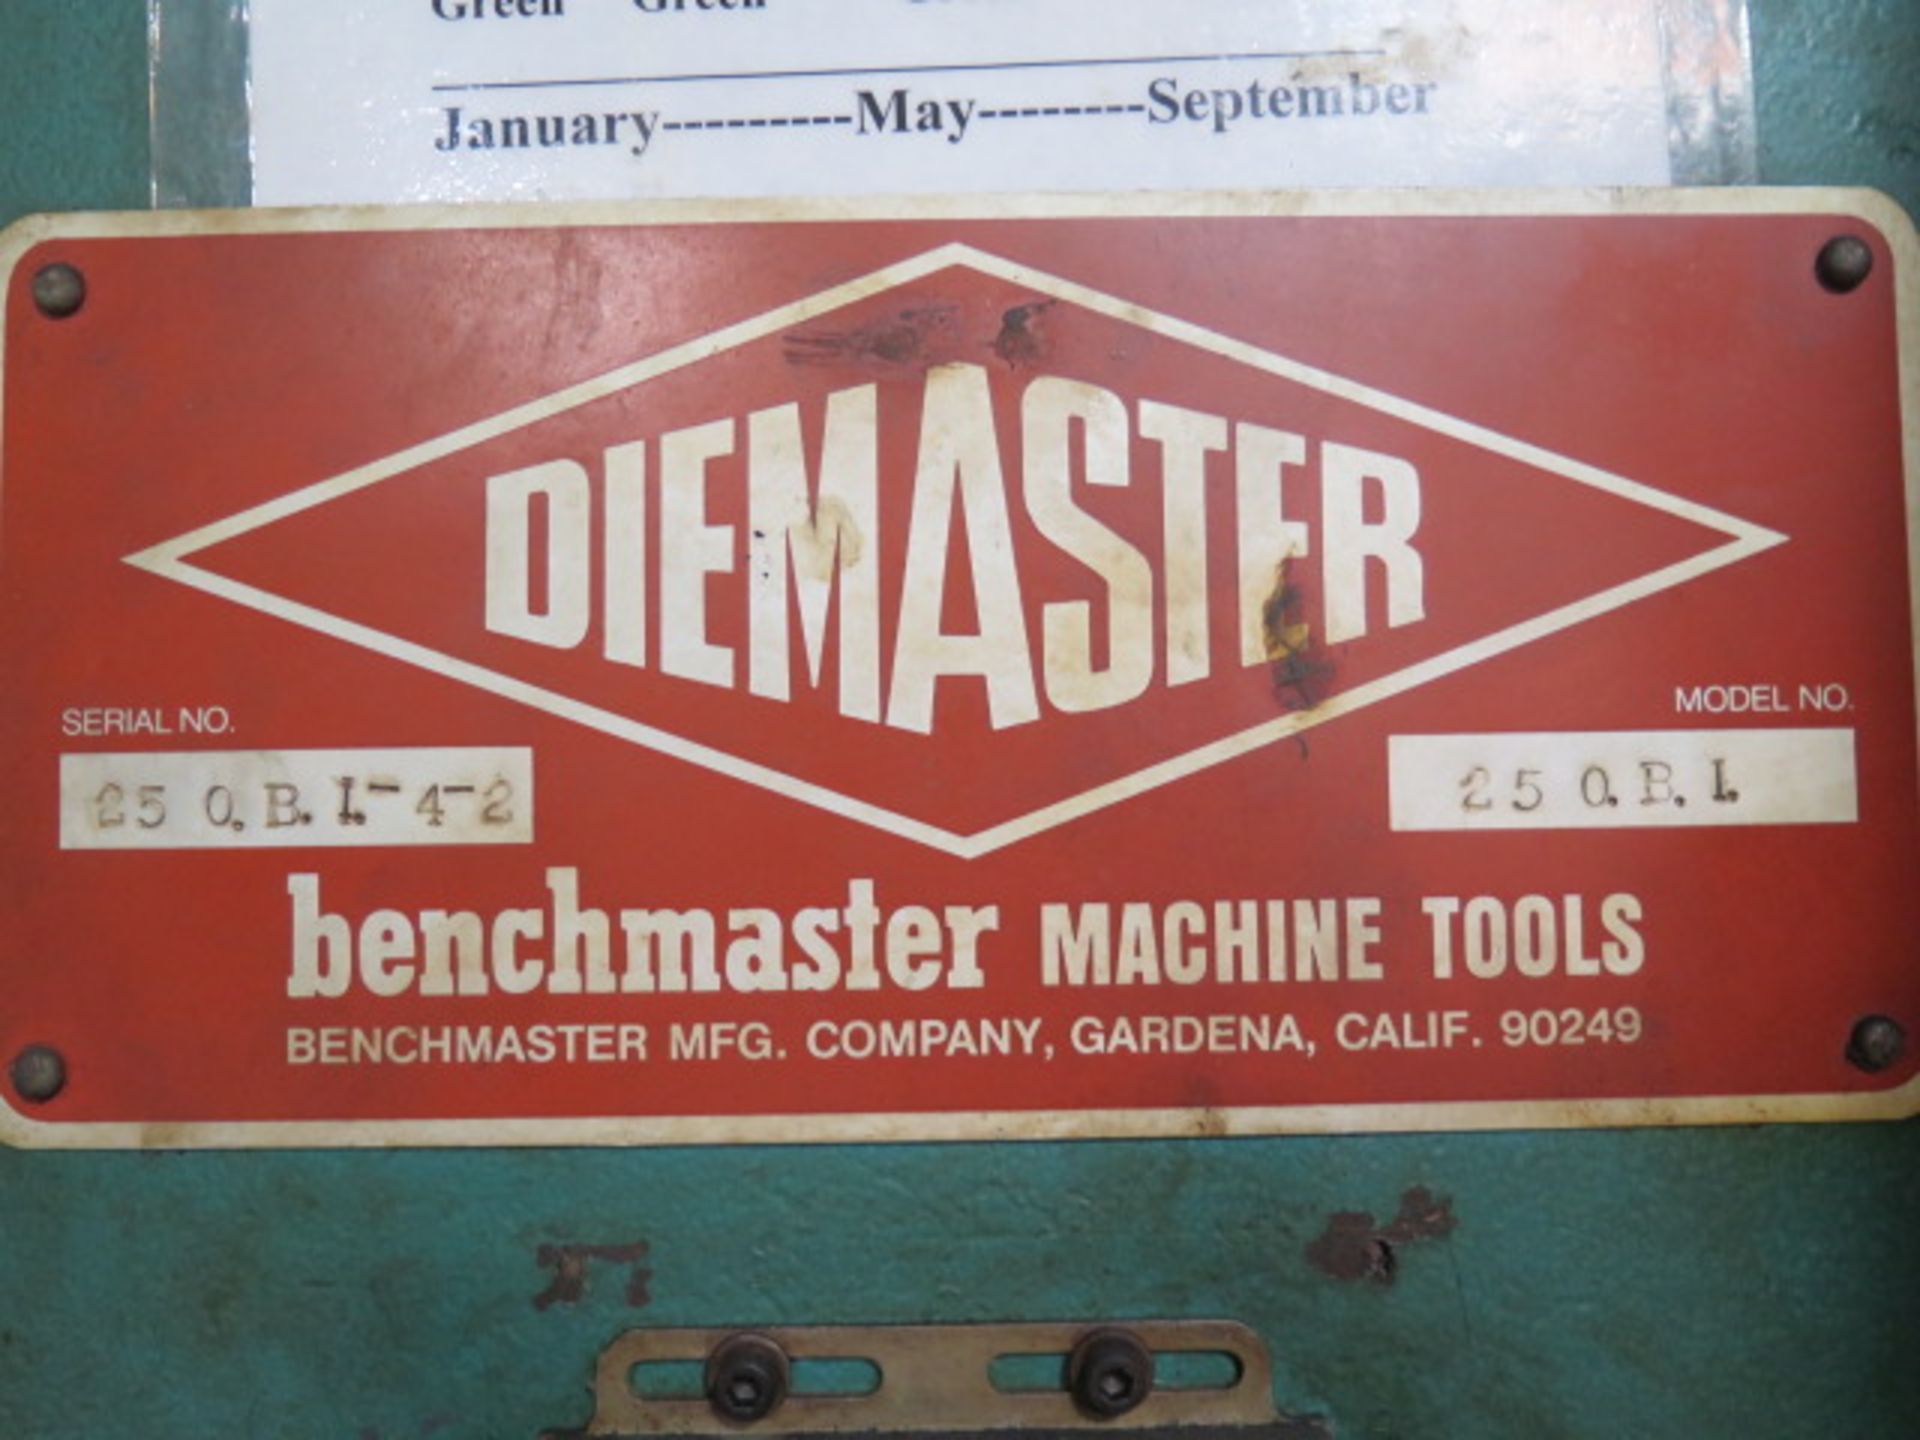 Benchmaster “Diemaster” mdl. 25 OBI 25 Ton Cap OBI Stamping Press s/n 25 OBI-4-2 w/ Pneumatic - Image 9 of 9